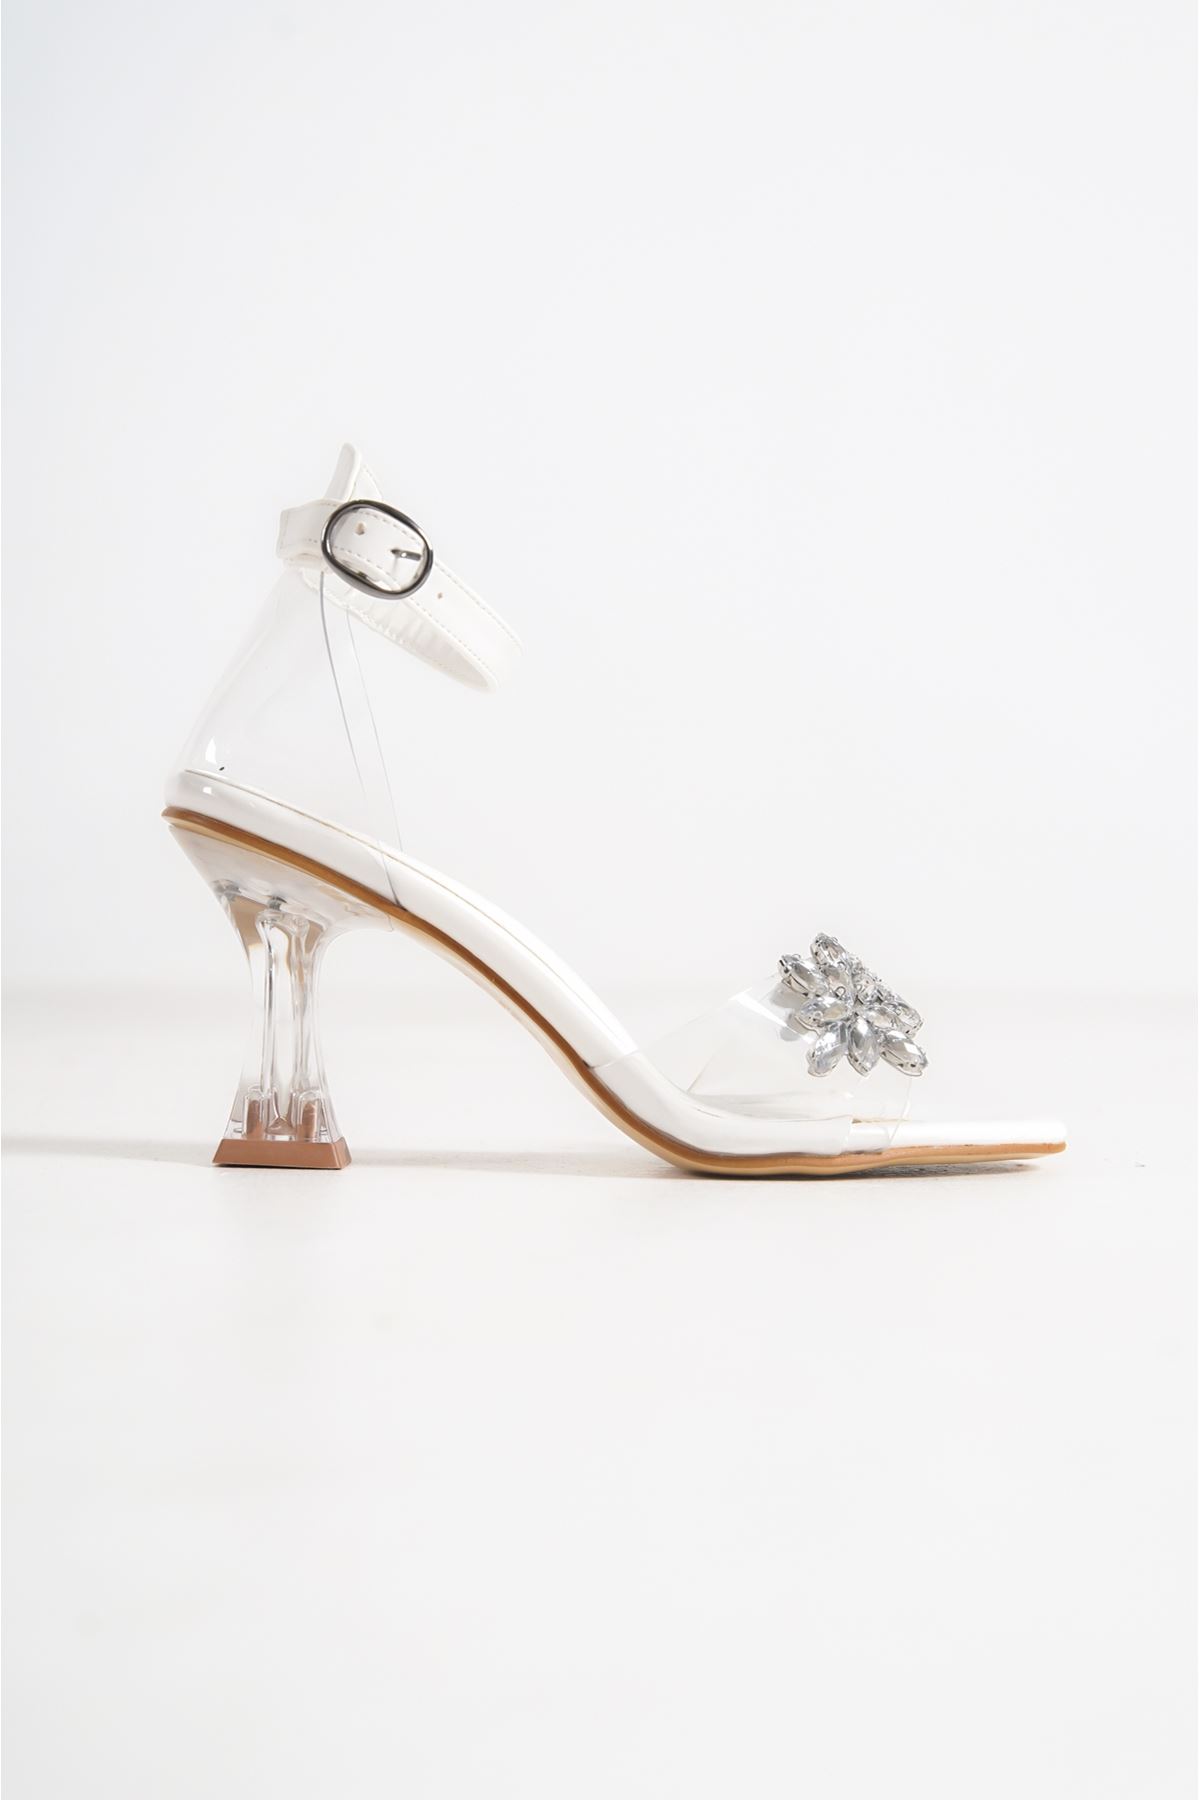 Jule Beyaz Taşlı Şeffaf Topuklu Kadın Ayakkabı